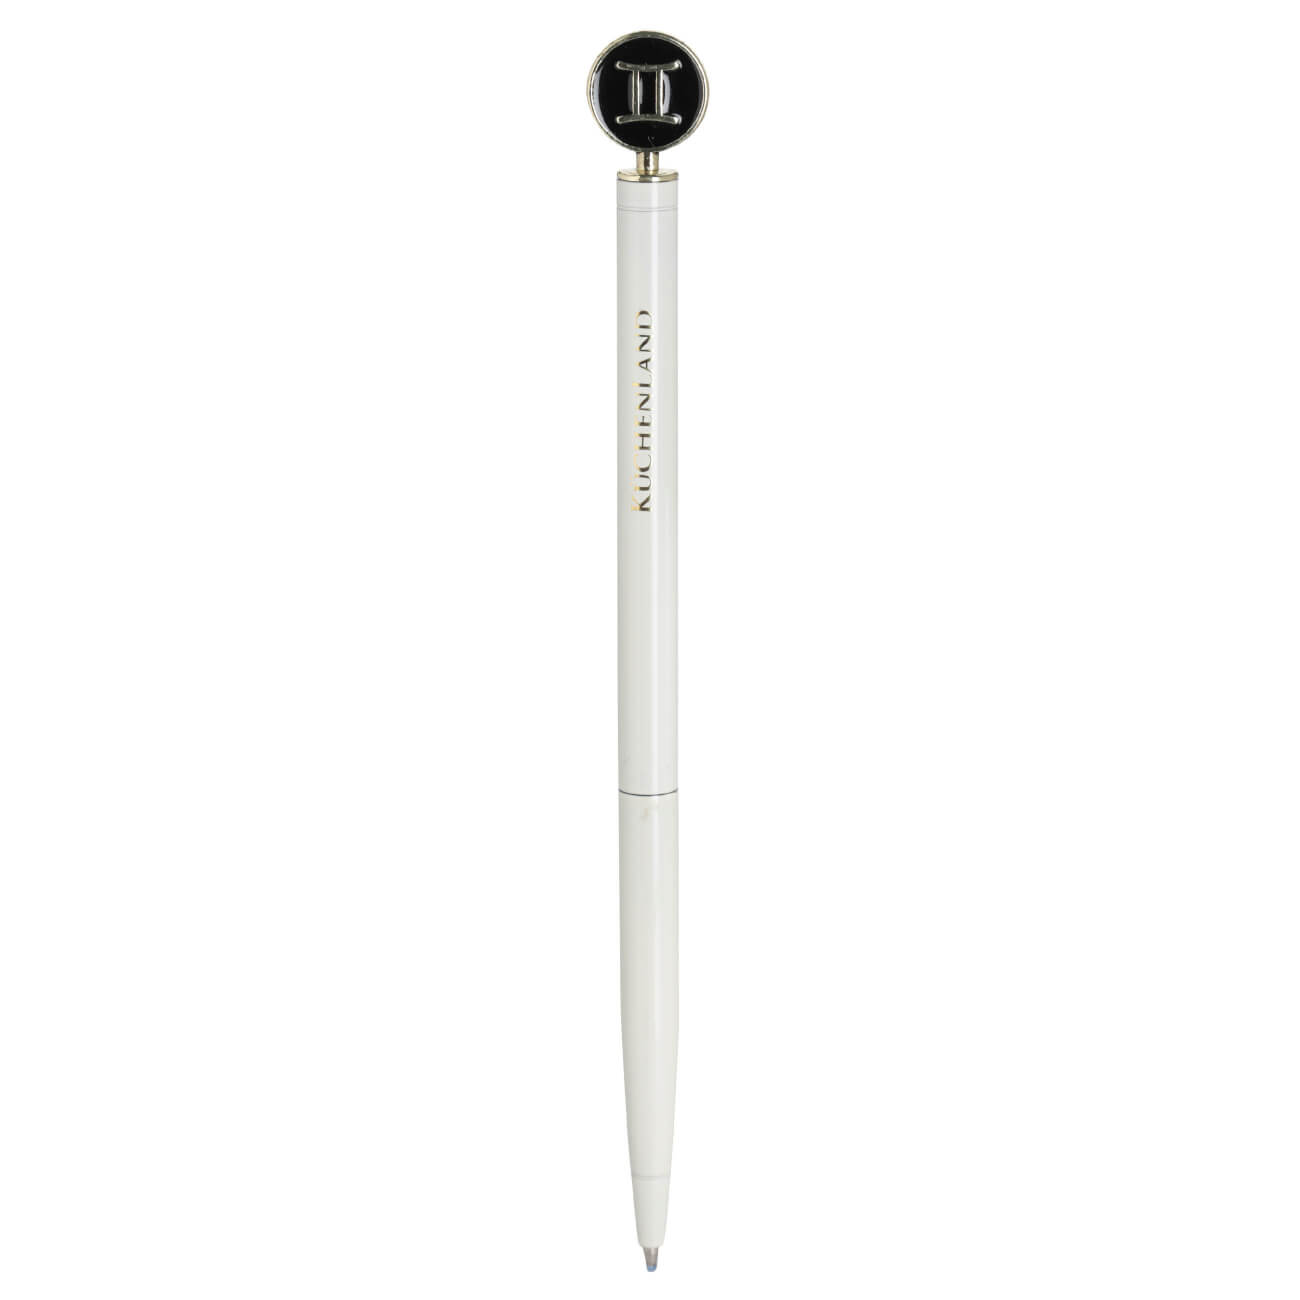 Ручка шариковая, 15 см, с фигуркой, сталь, молочно-золотистая, Близнецы, Zodiac ручка подарочная шариковая поворотная в пластиковом футляре